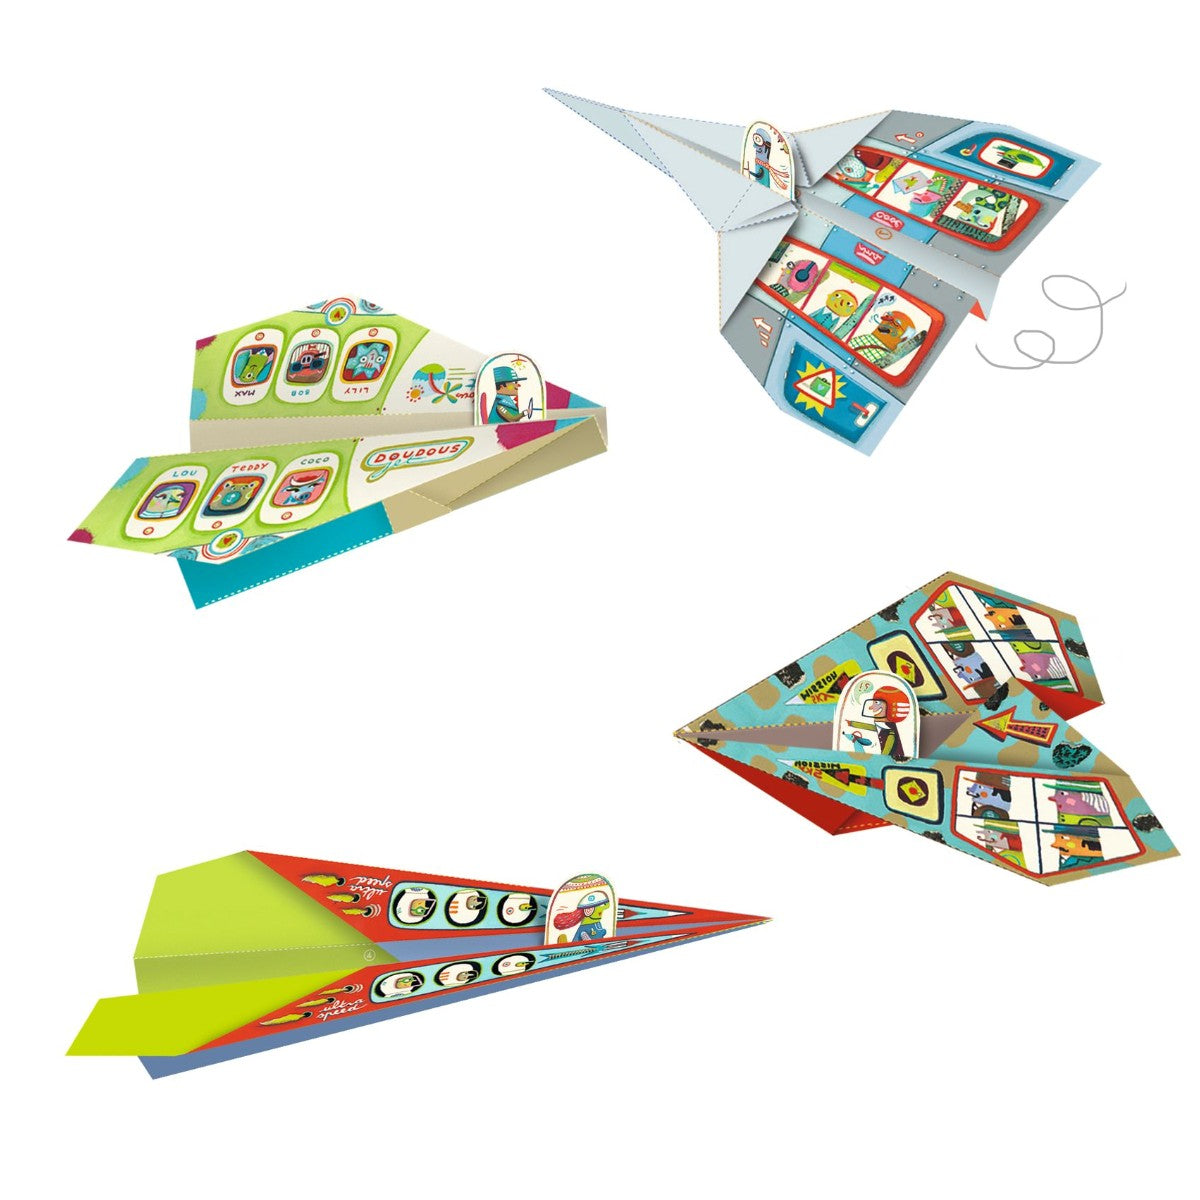 Djeco Origami - Seje flyvemaskiner